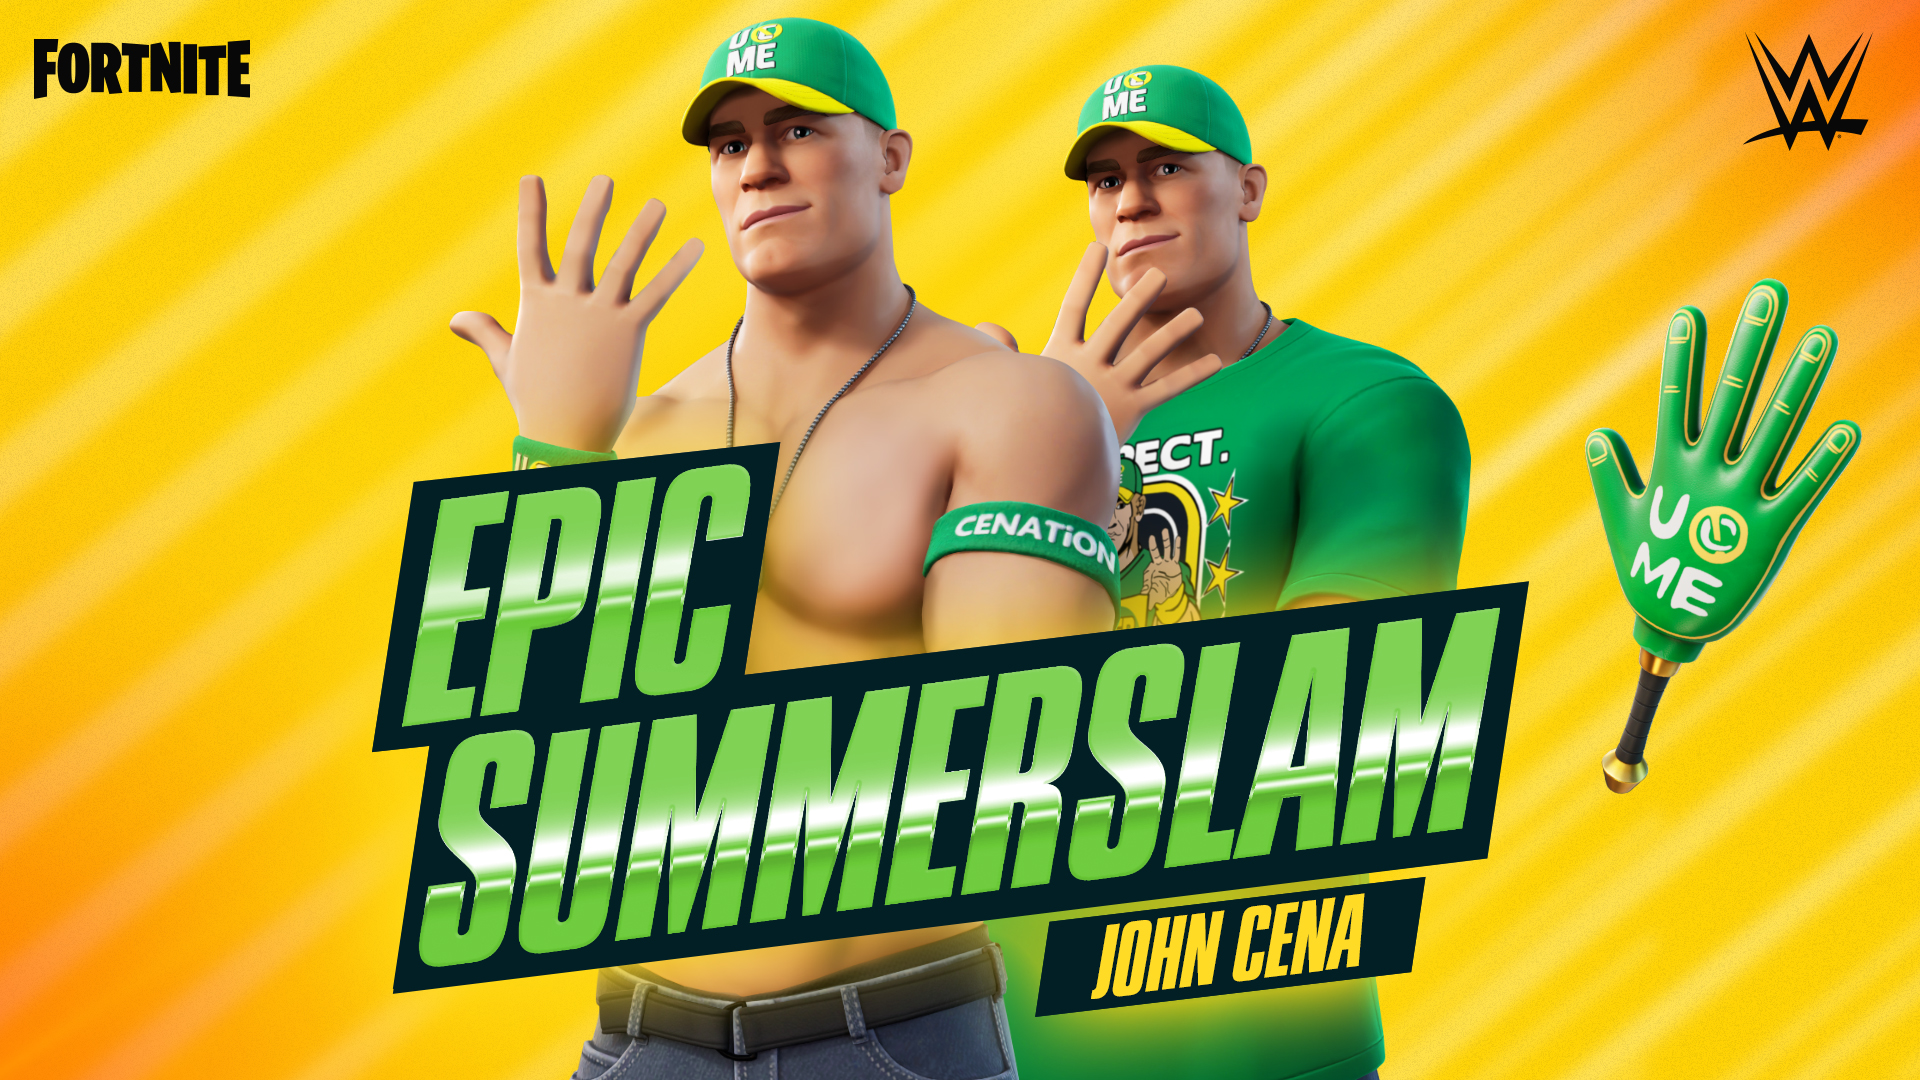 Ramaikan Event WWE SummerSlam 2022, Fornite Siap Hadirkan John Cena